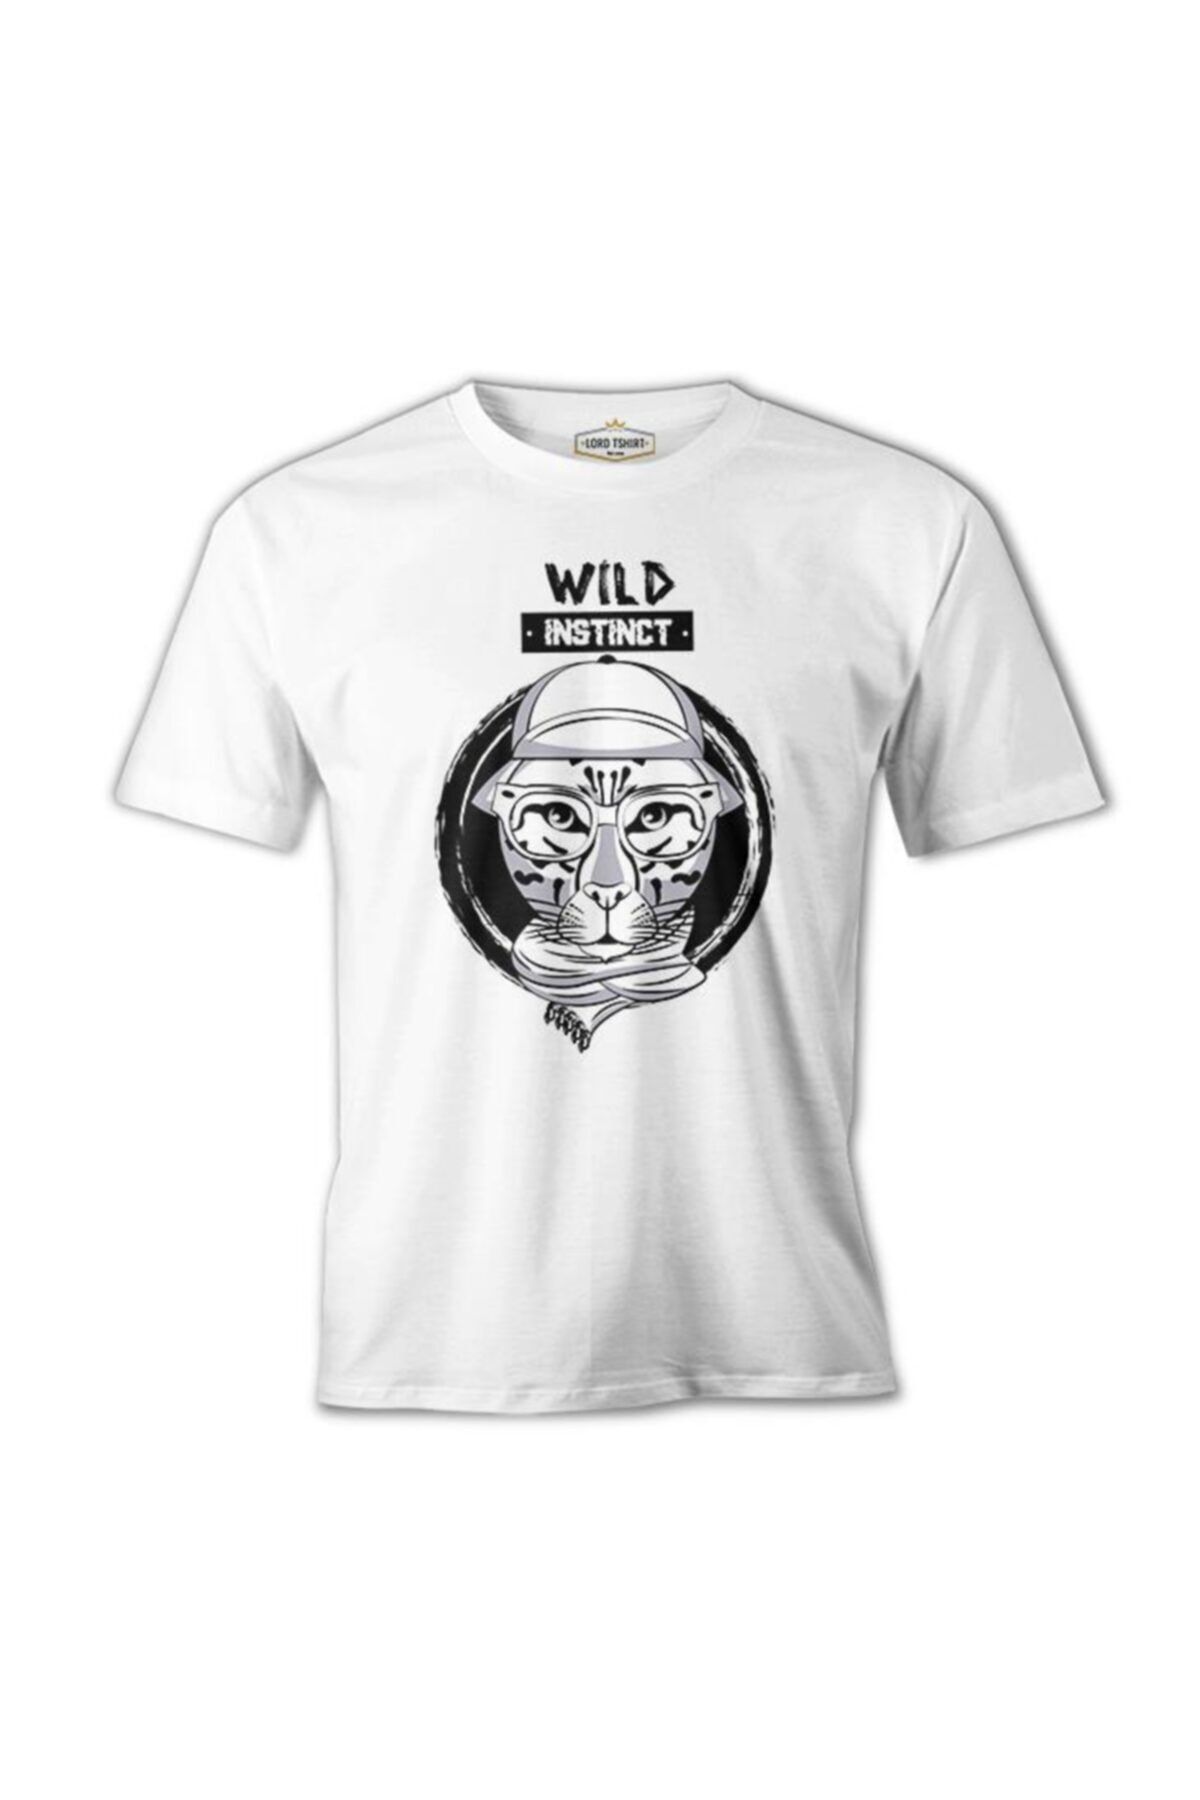 Lord T-Shirt Wild Instinct - Kaplan Beyaz Erkek Tshirt